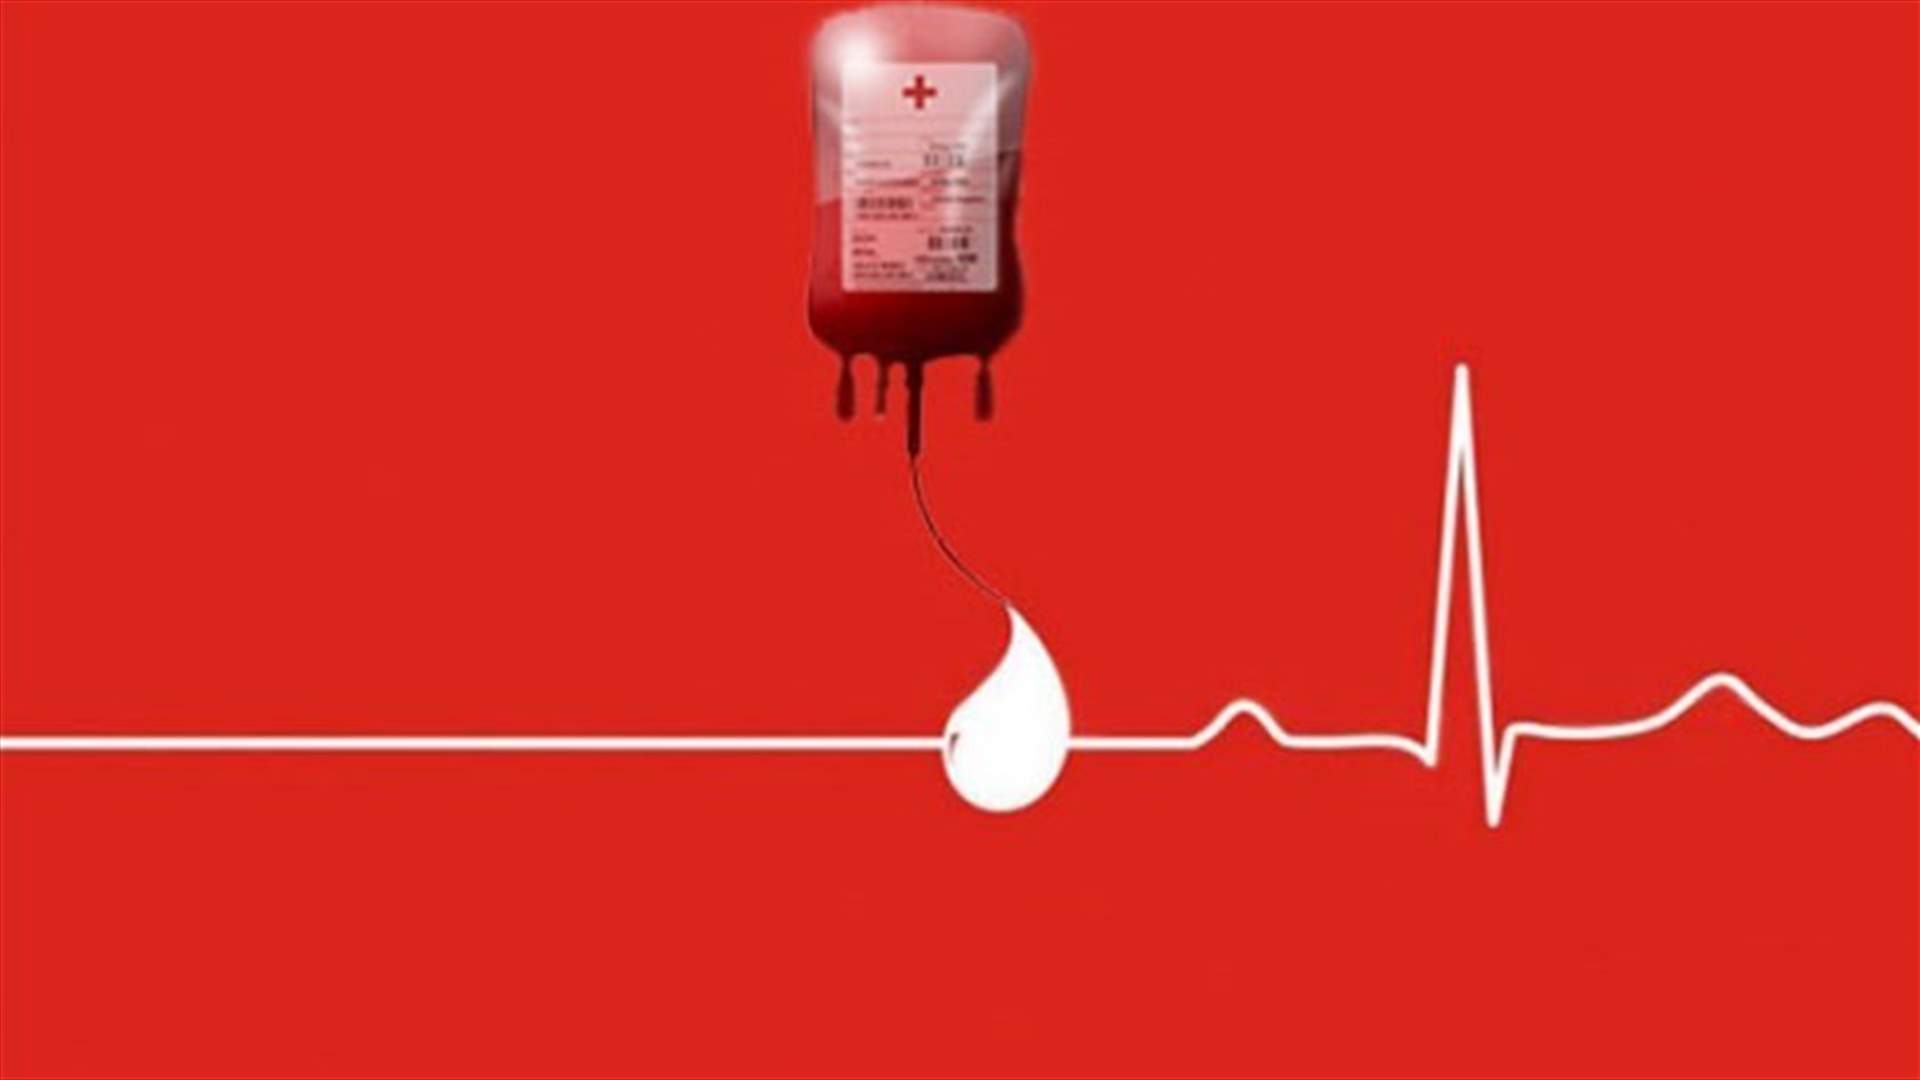 مريض في مستشفى جبل لبنان بحاجة الى دم من فئة O+ ... للتبرع الاتصال على 71872022